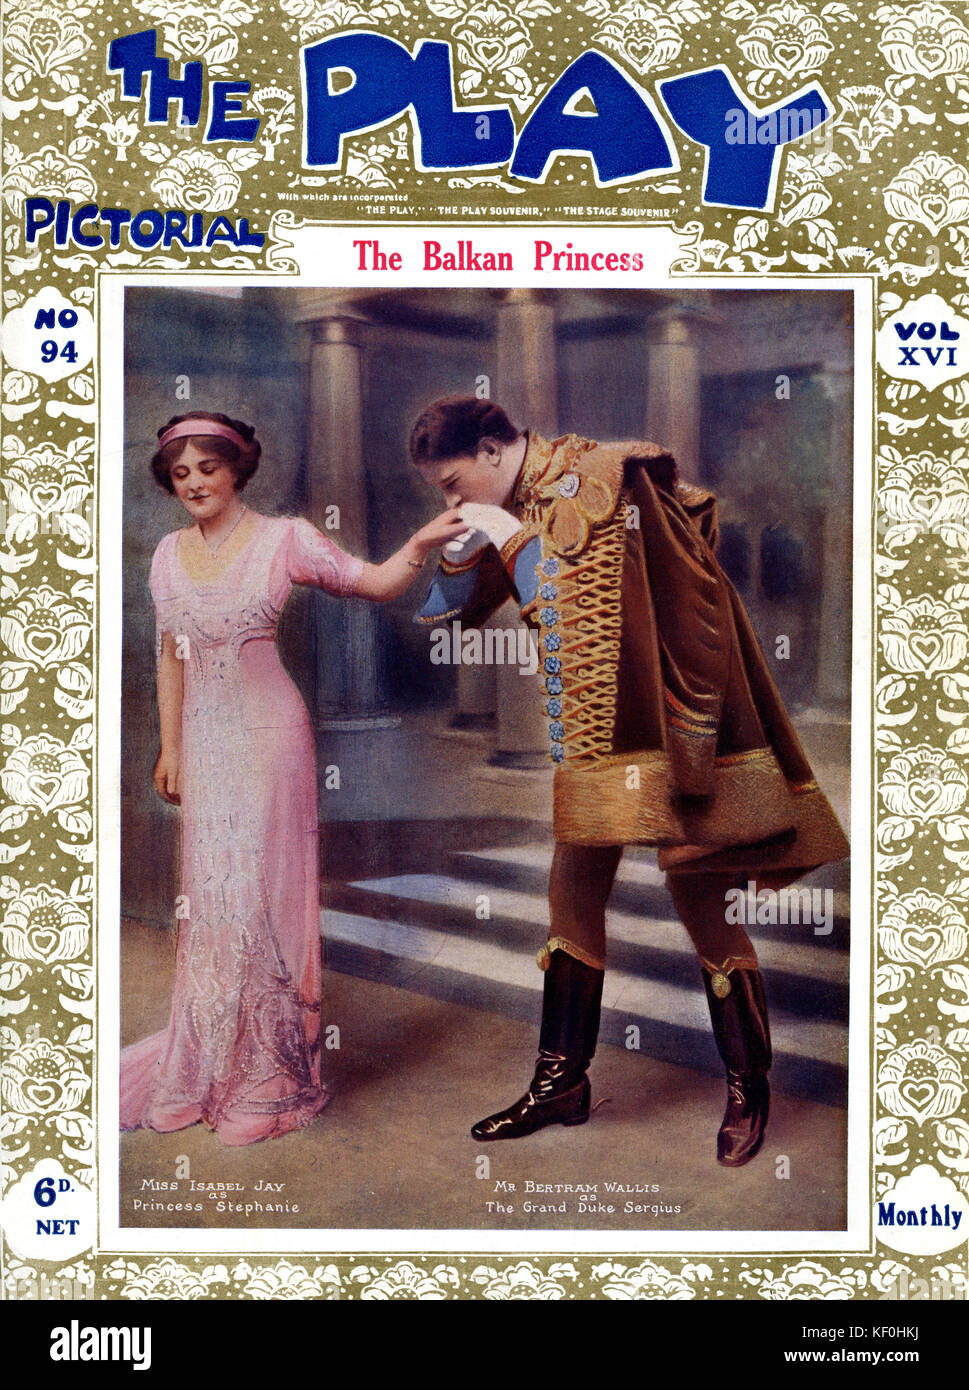 "Der Balkan Princess' von Frederick Lonsdale und Frank Curzon, mit Isabel Jay als Prinzessin Stephanie (17. Oktober 1879 - 26. Februar 1927) und Bertram Wallis als der Großherzog Serquis (22. Februar 1874 - 11. April 1952). Abdeckung der BILDHAFTEN, 1910. Stockfoto